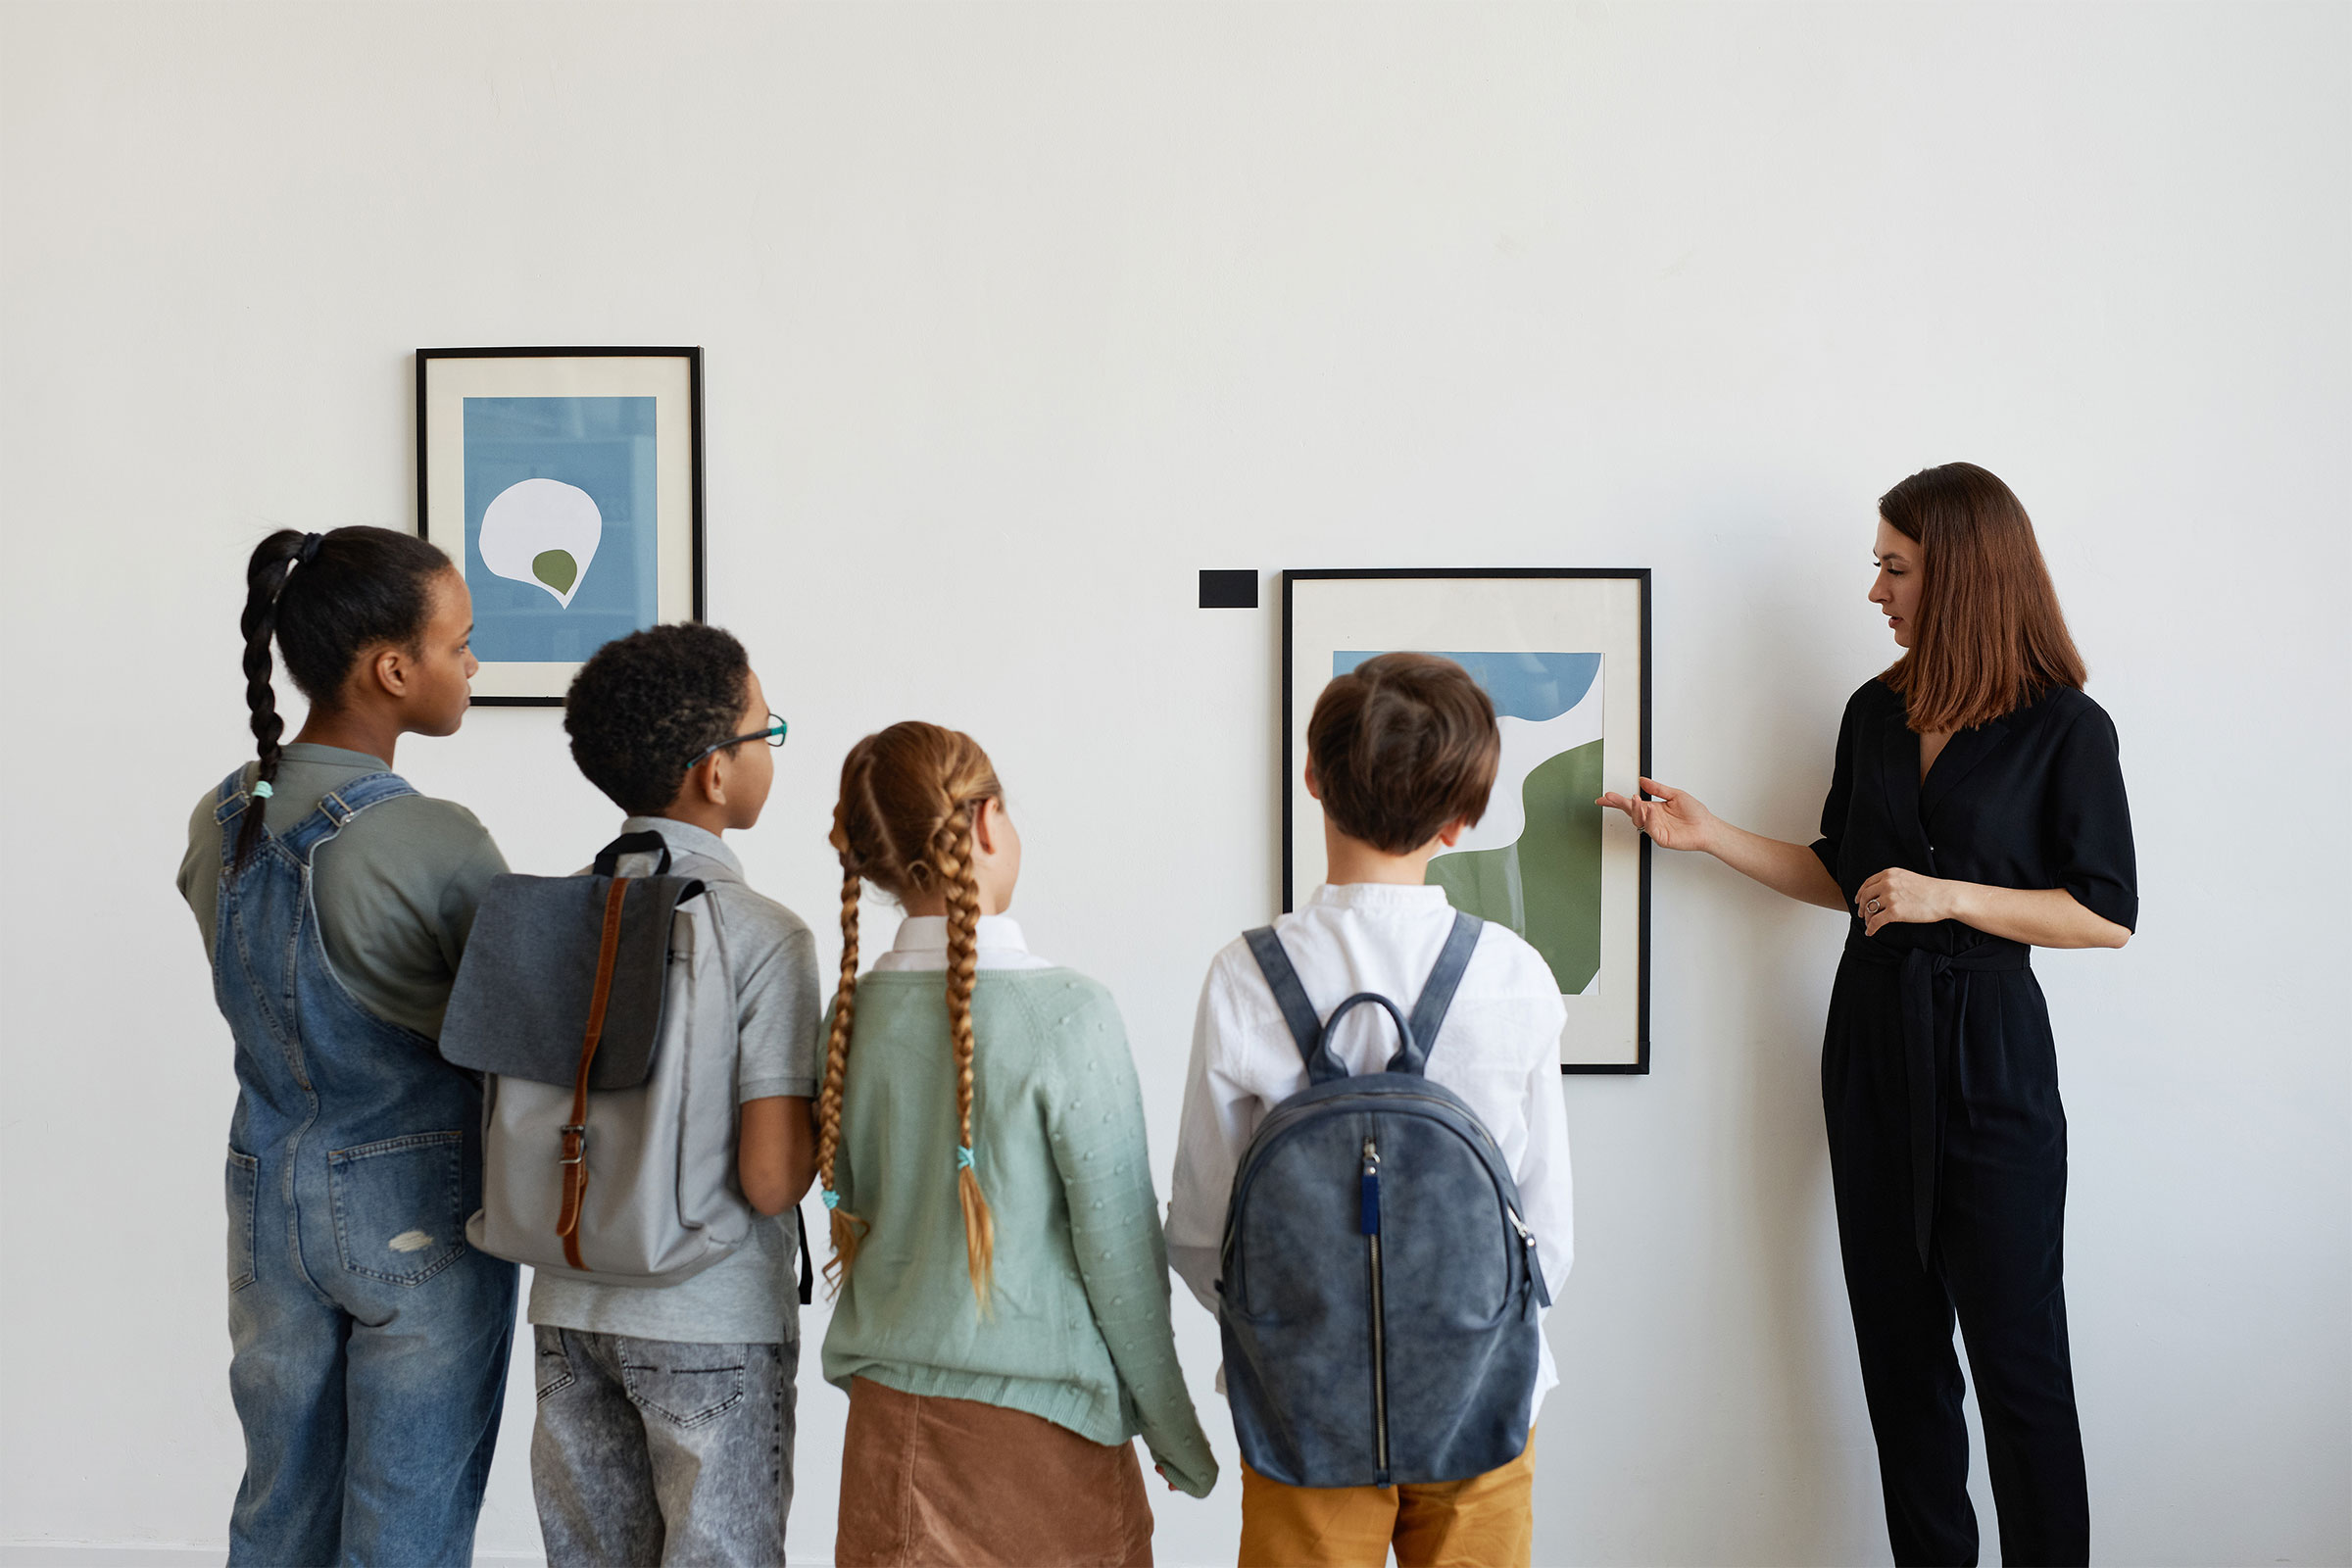 Children at an art gallery